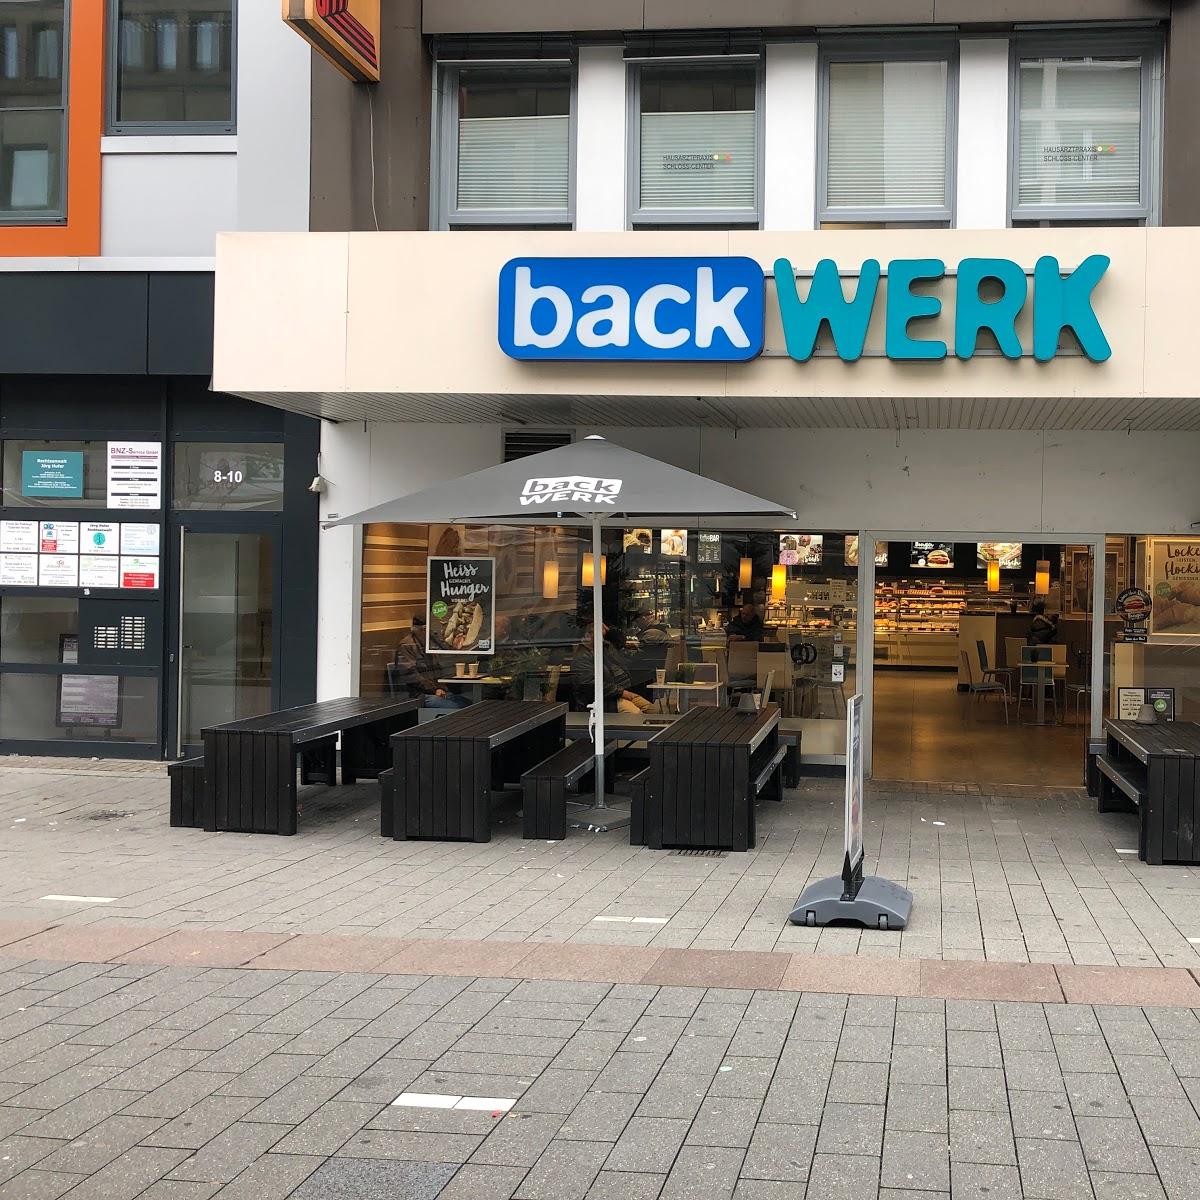 Restaurant "BackWerk" in Mülheim an der Ruhr